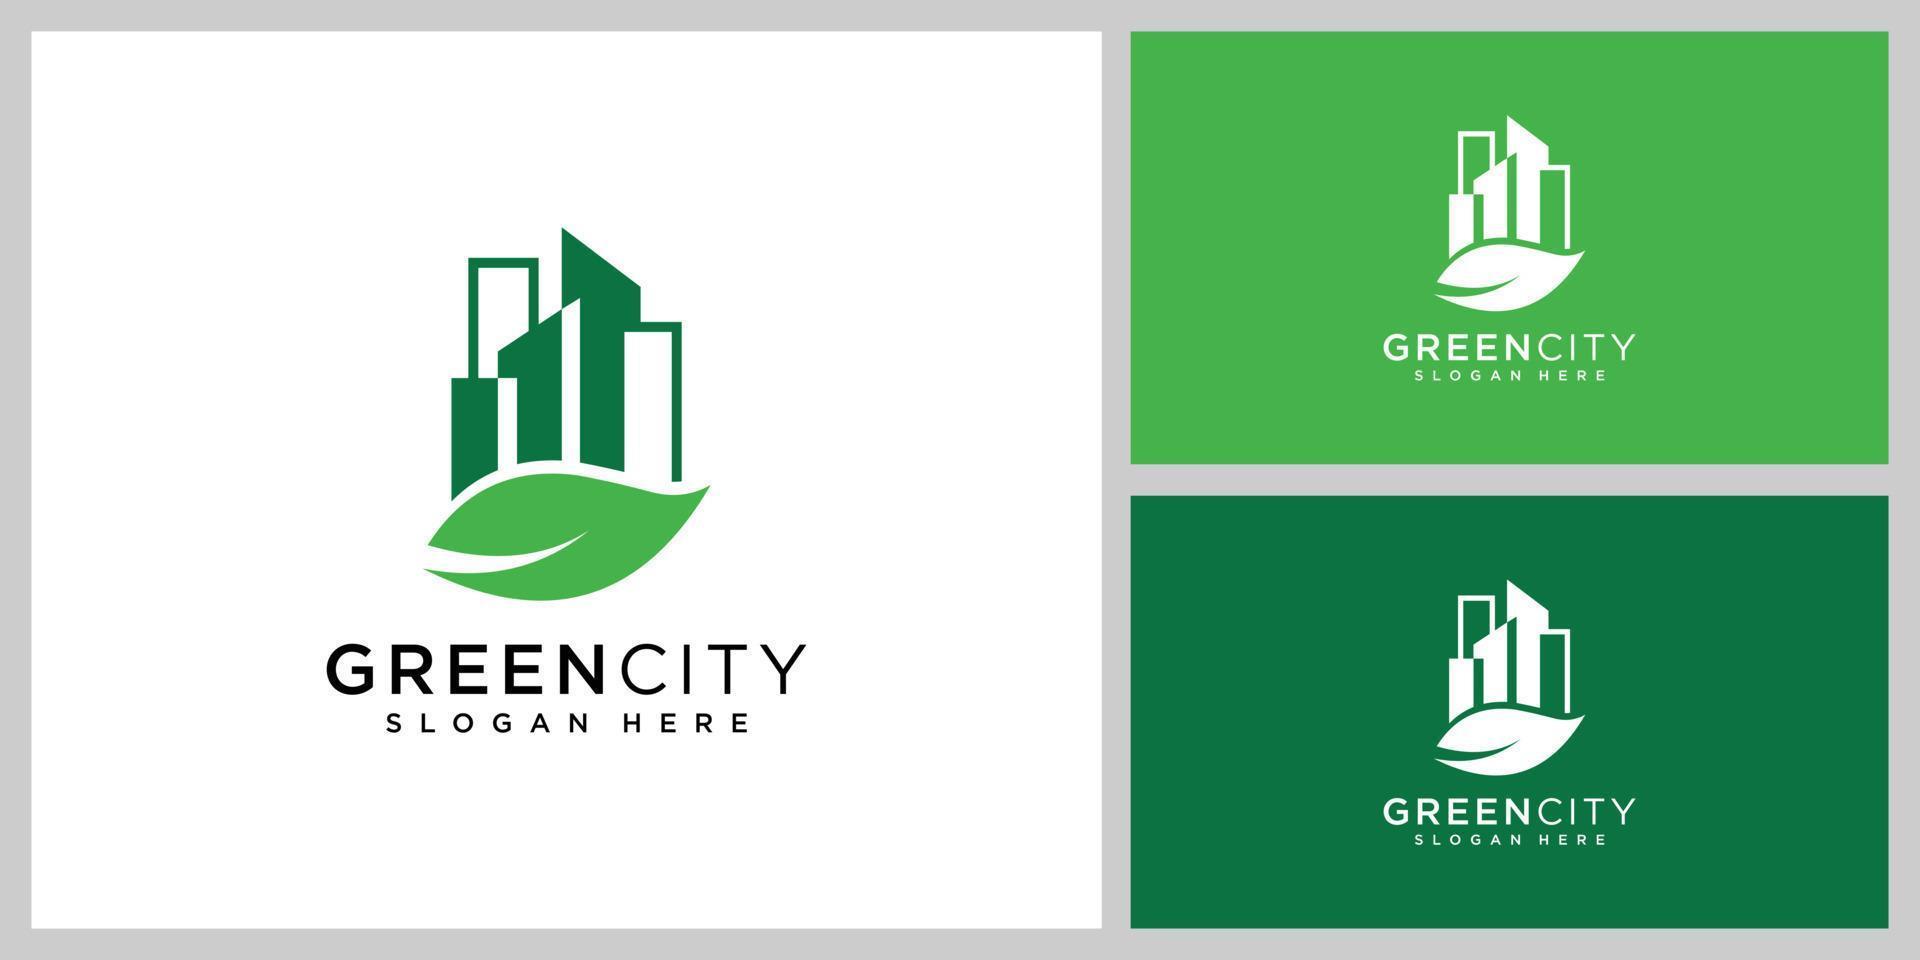 green city logo vector design template